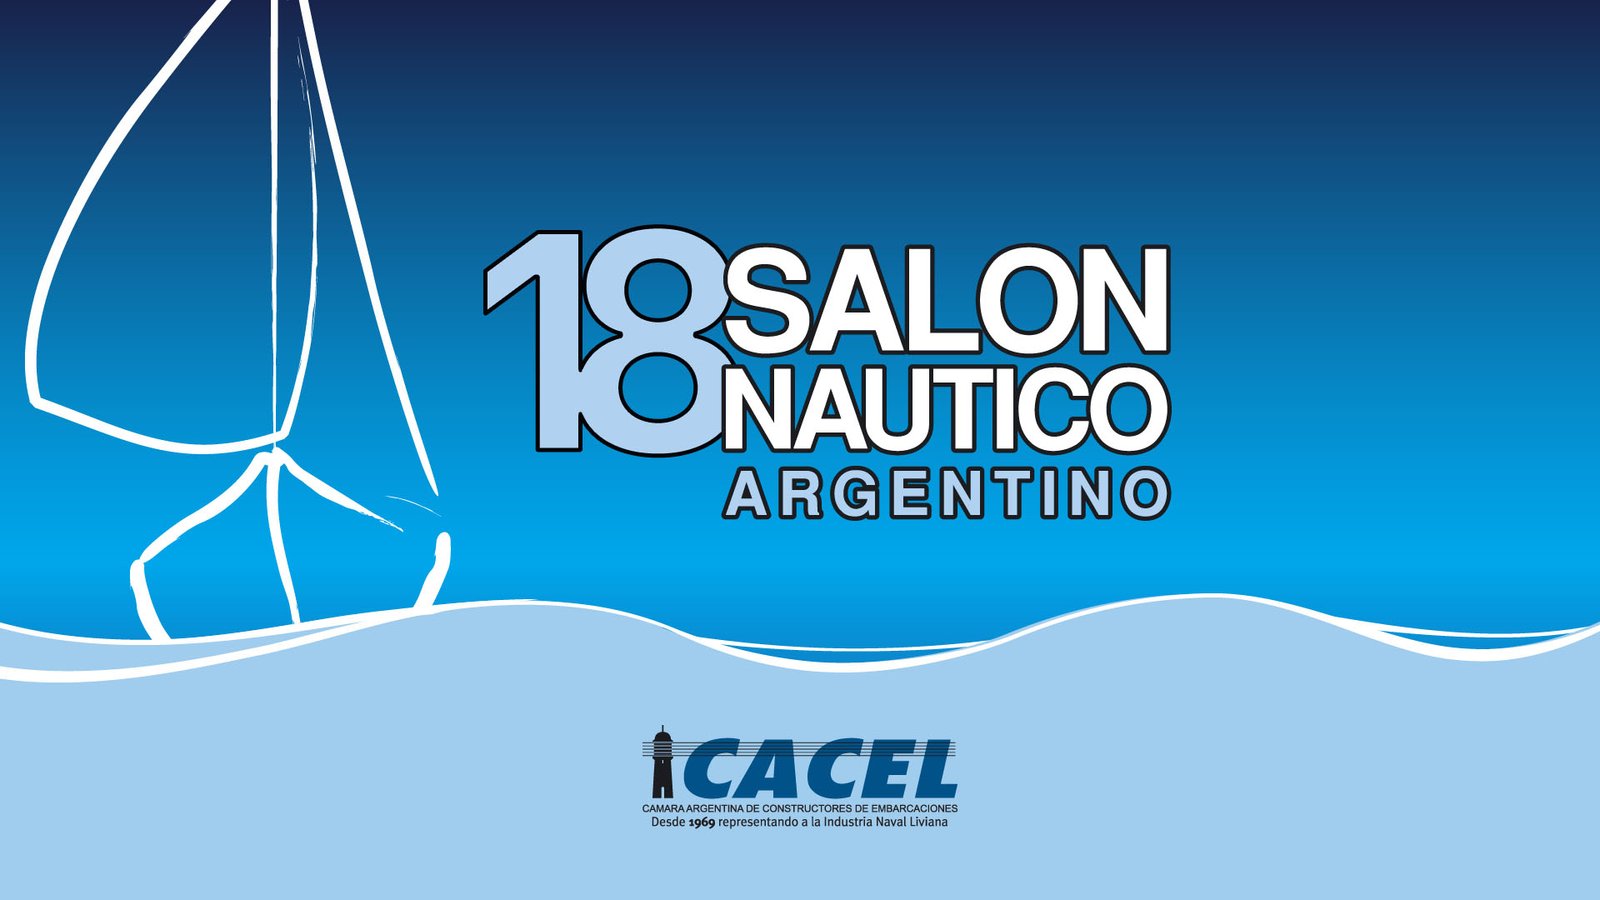 18 salon nautico argentino